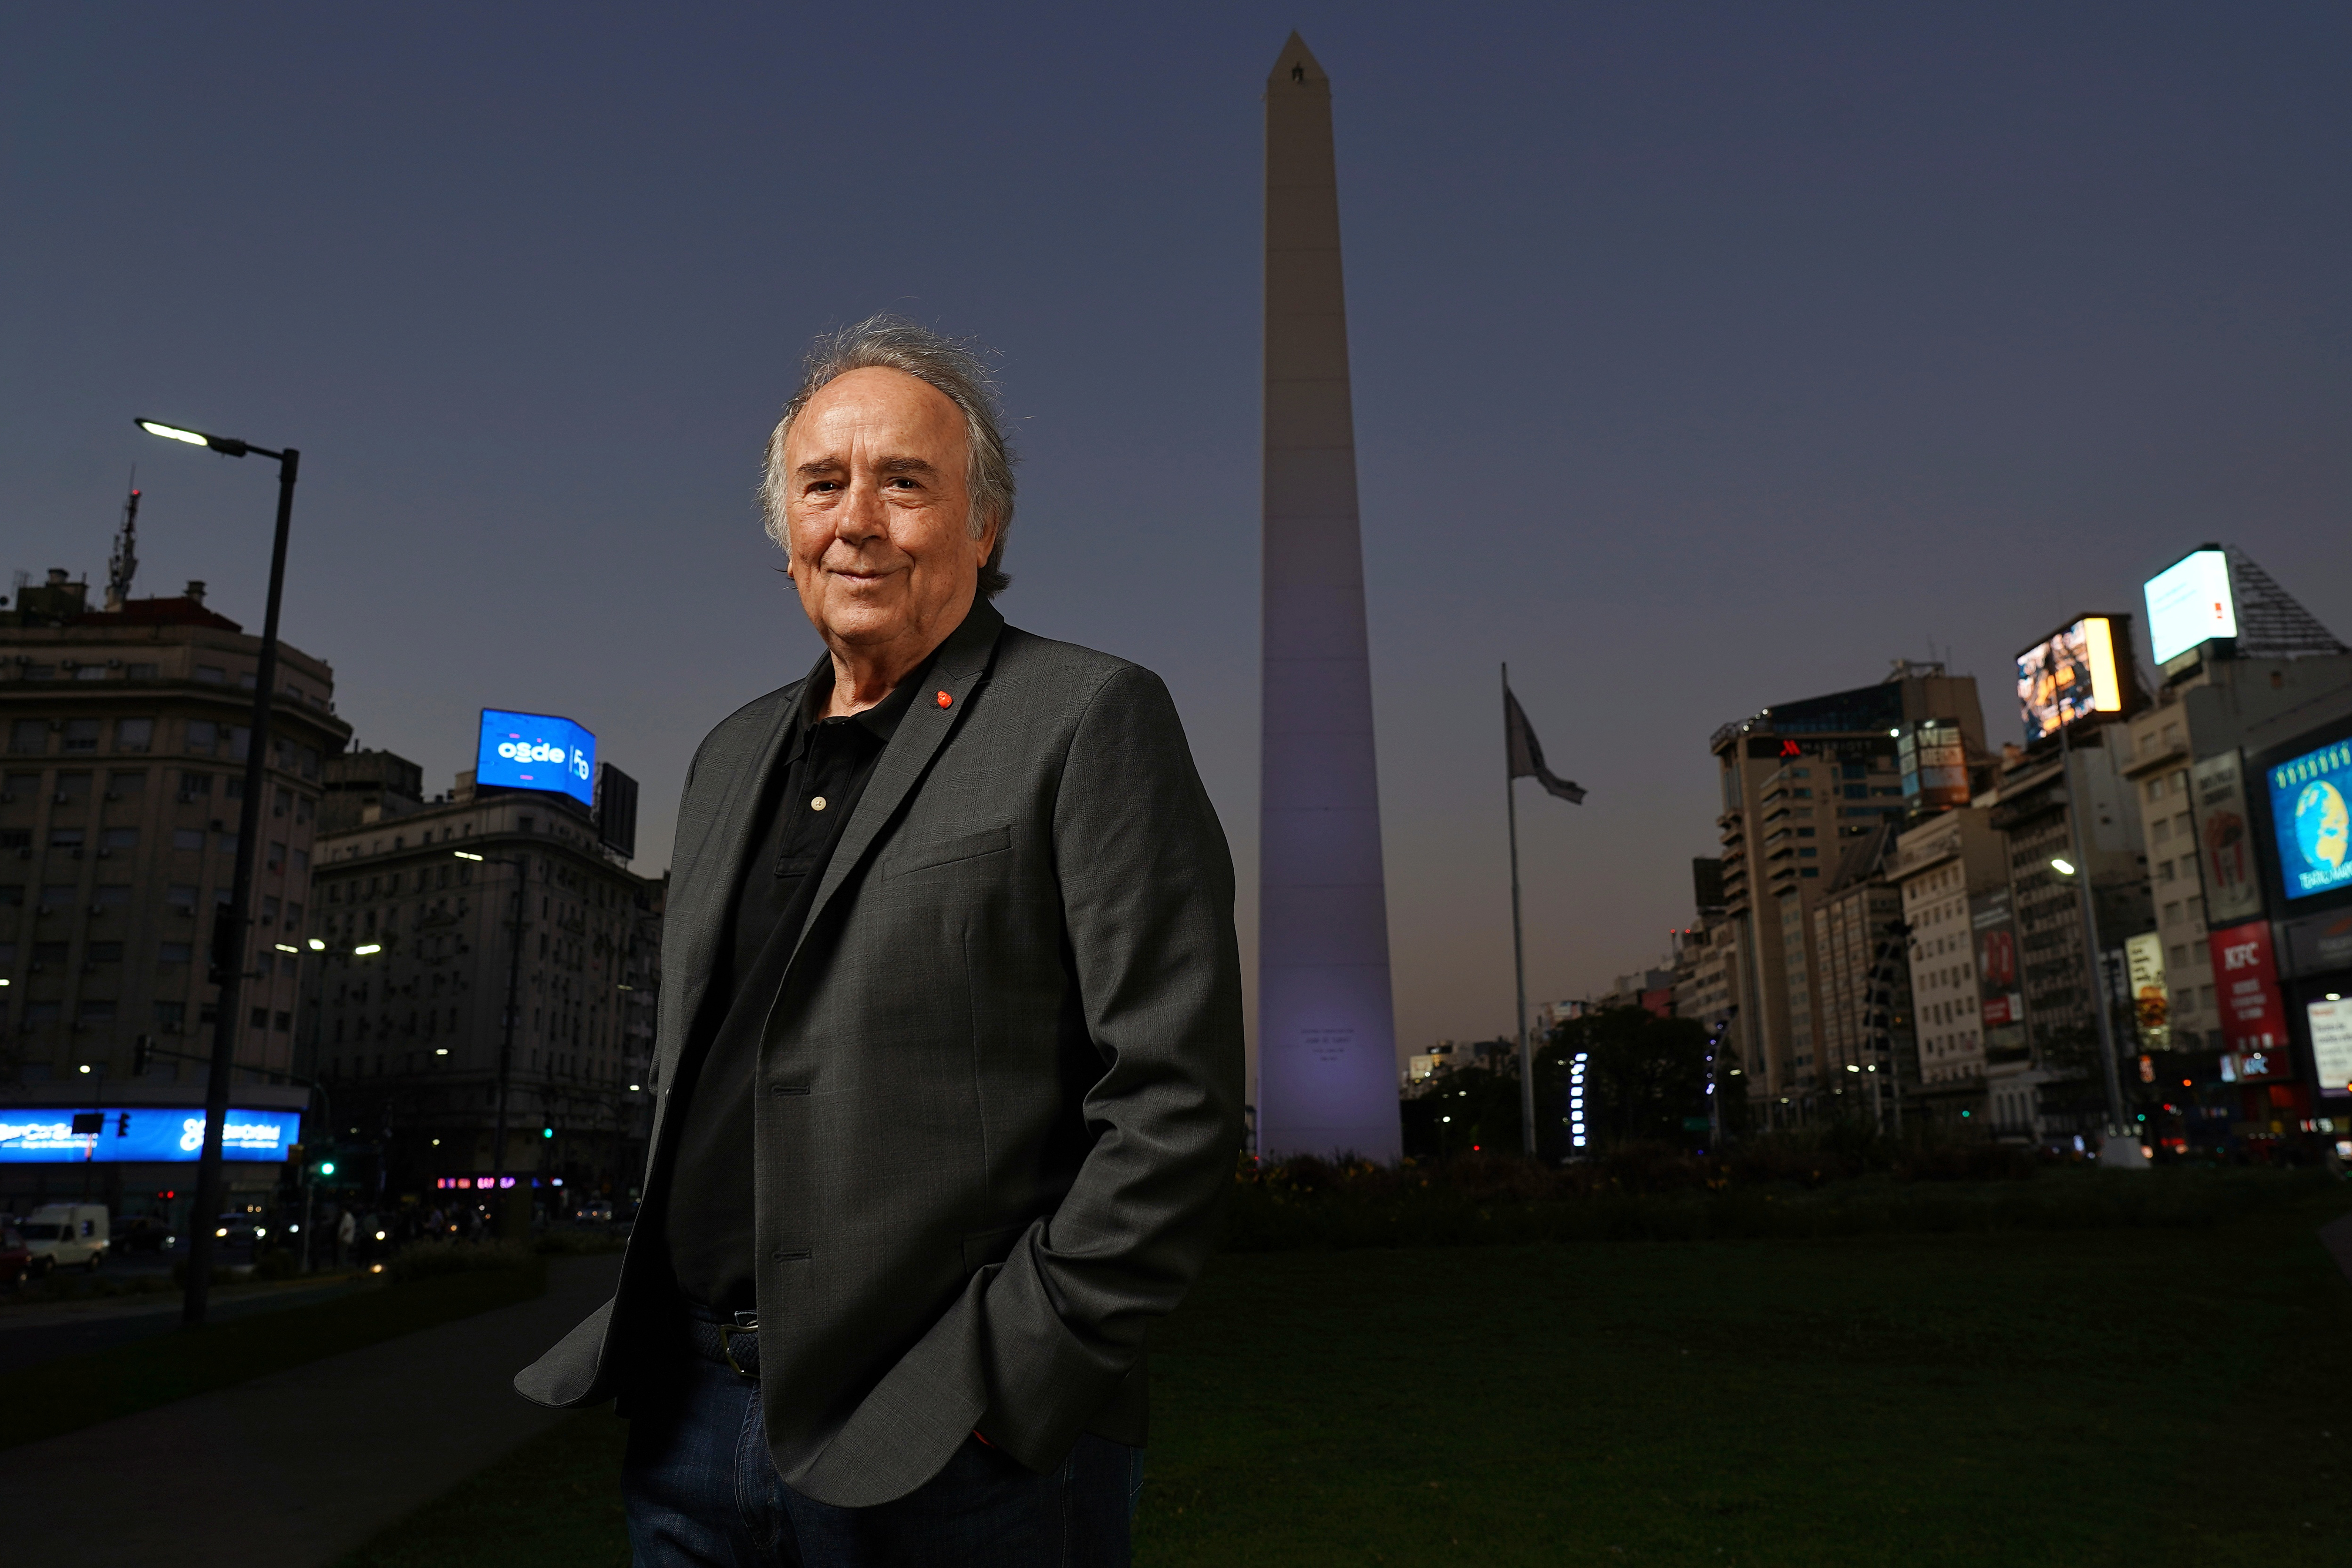 Serrat llegó a la Argentina para su última gira: “Vengo a despedirme de los escenarios y no a despedirme de la gente, ni del país ni del cariño que nos ha unido en los últimos 60 años de mi vida”. (Martín Bonetto. Blueteam)